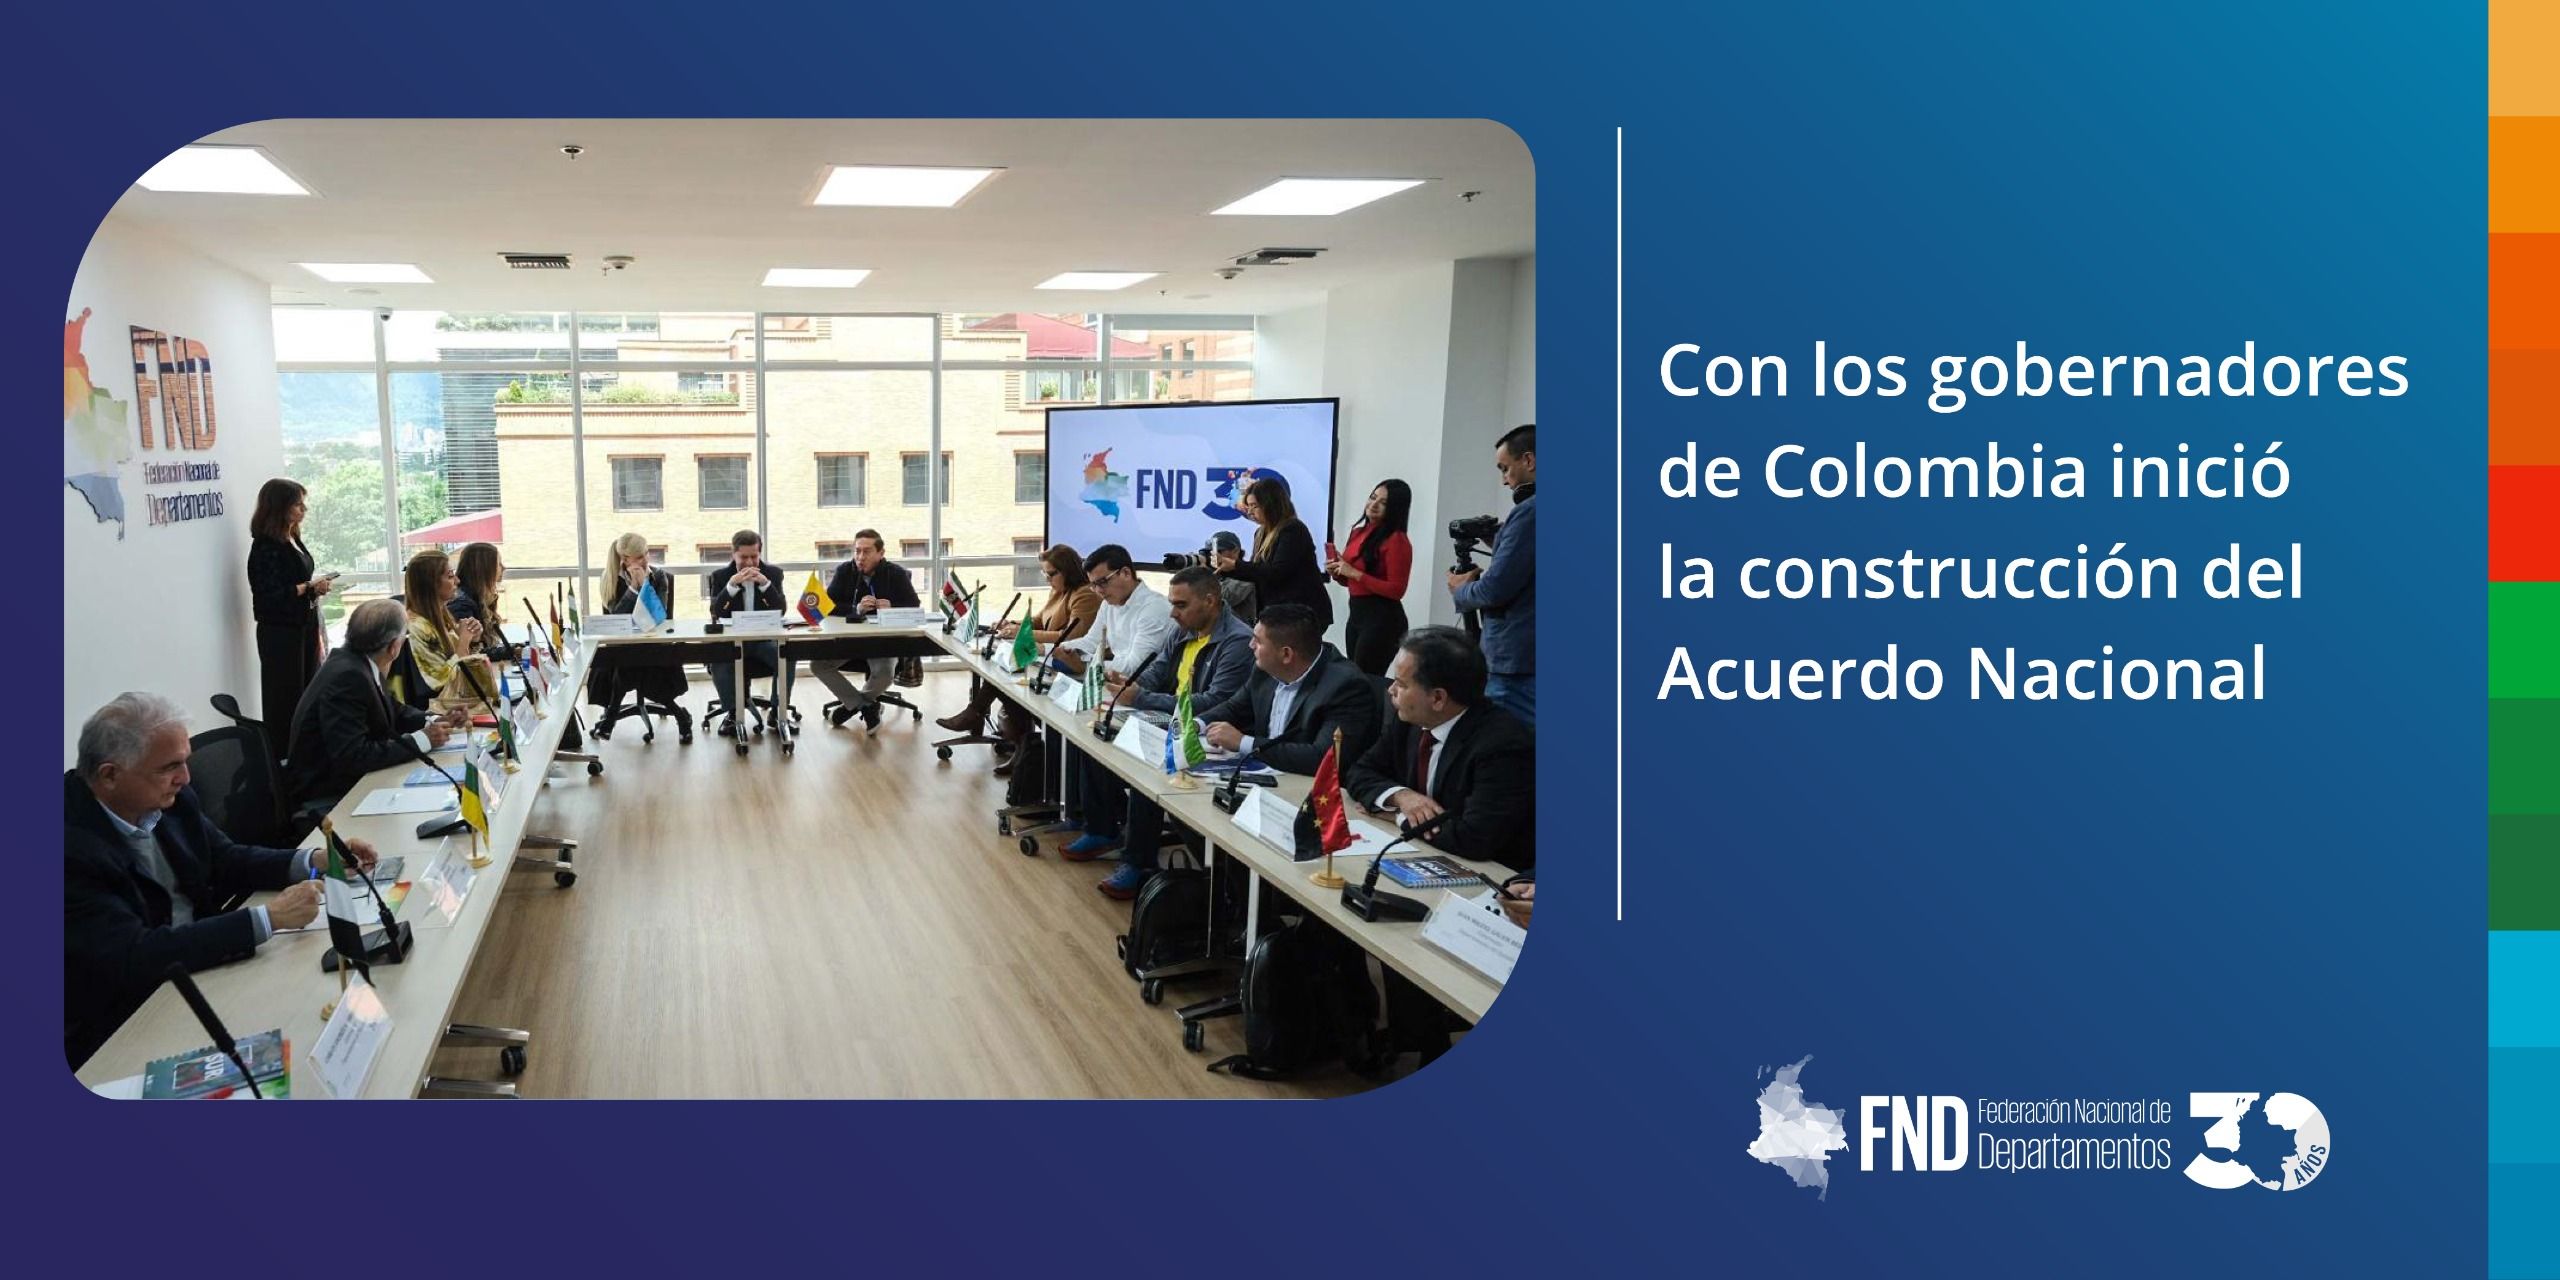 image Con los gobernadores de Colombia inició la construcción del Acuerdo Nacional